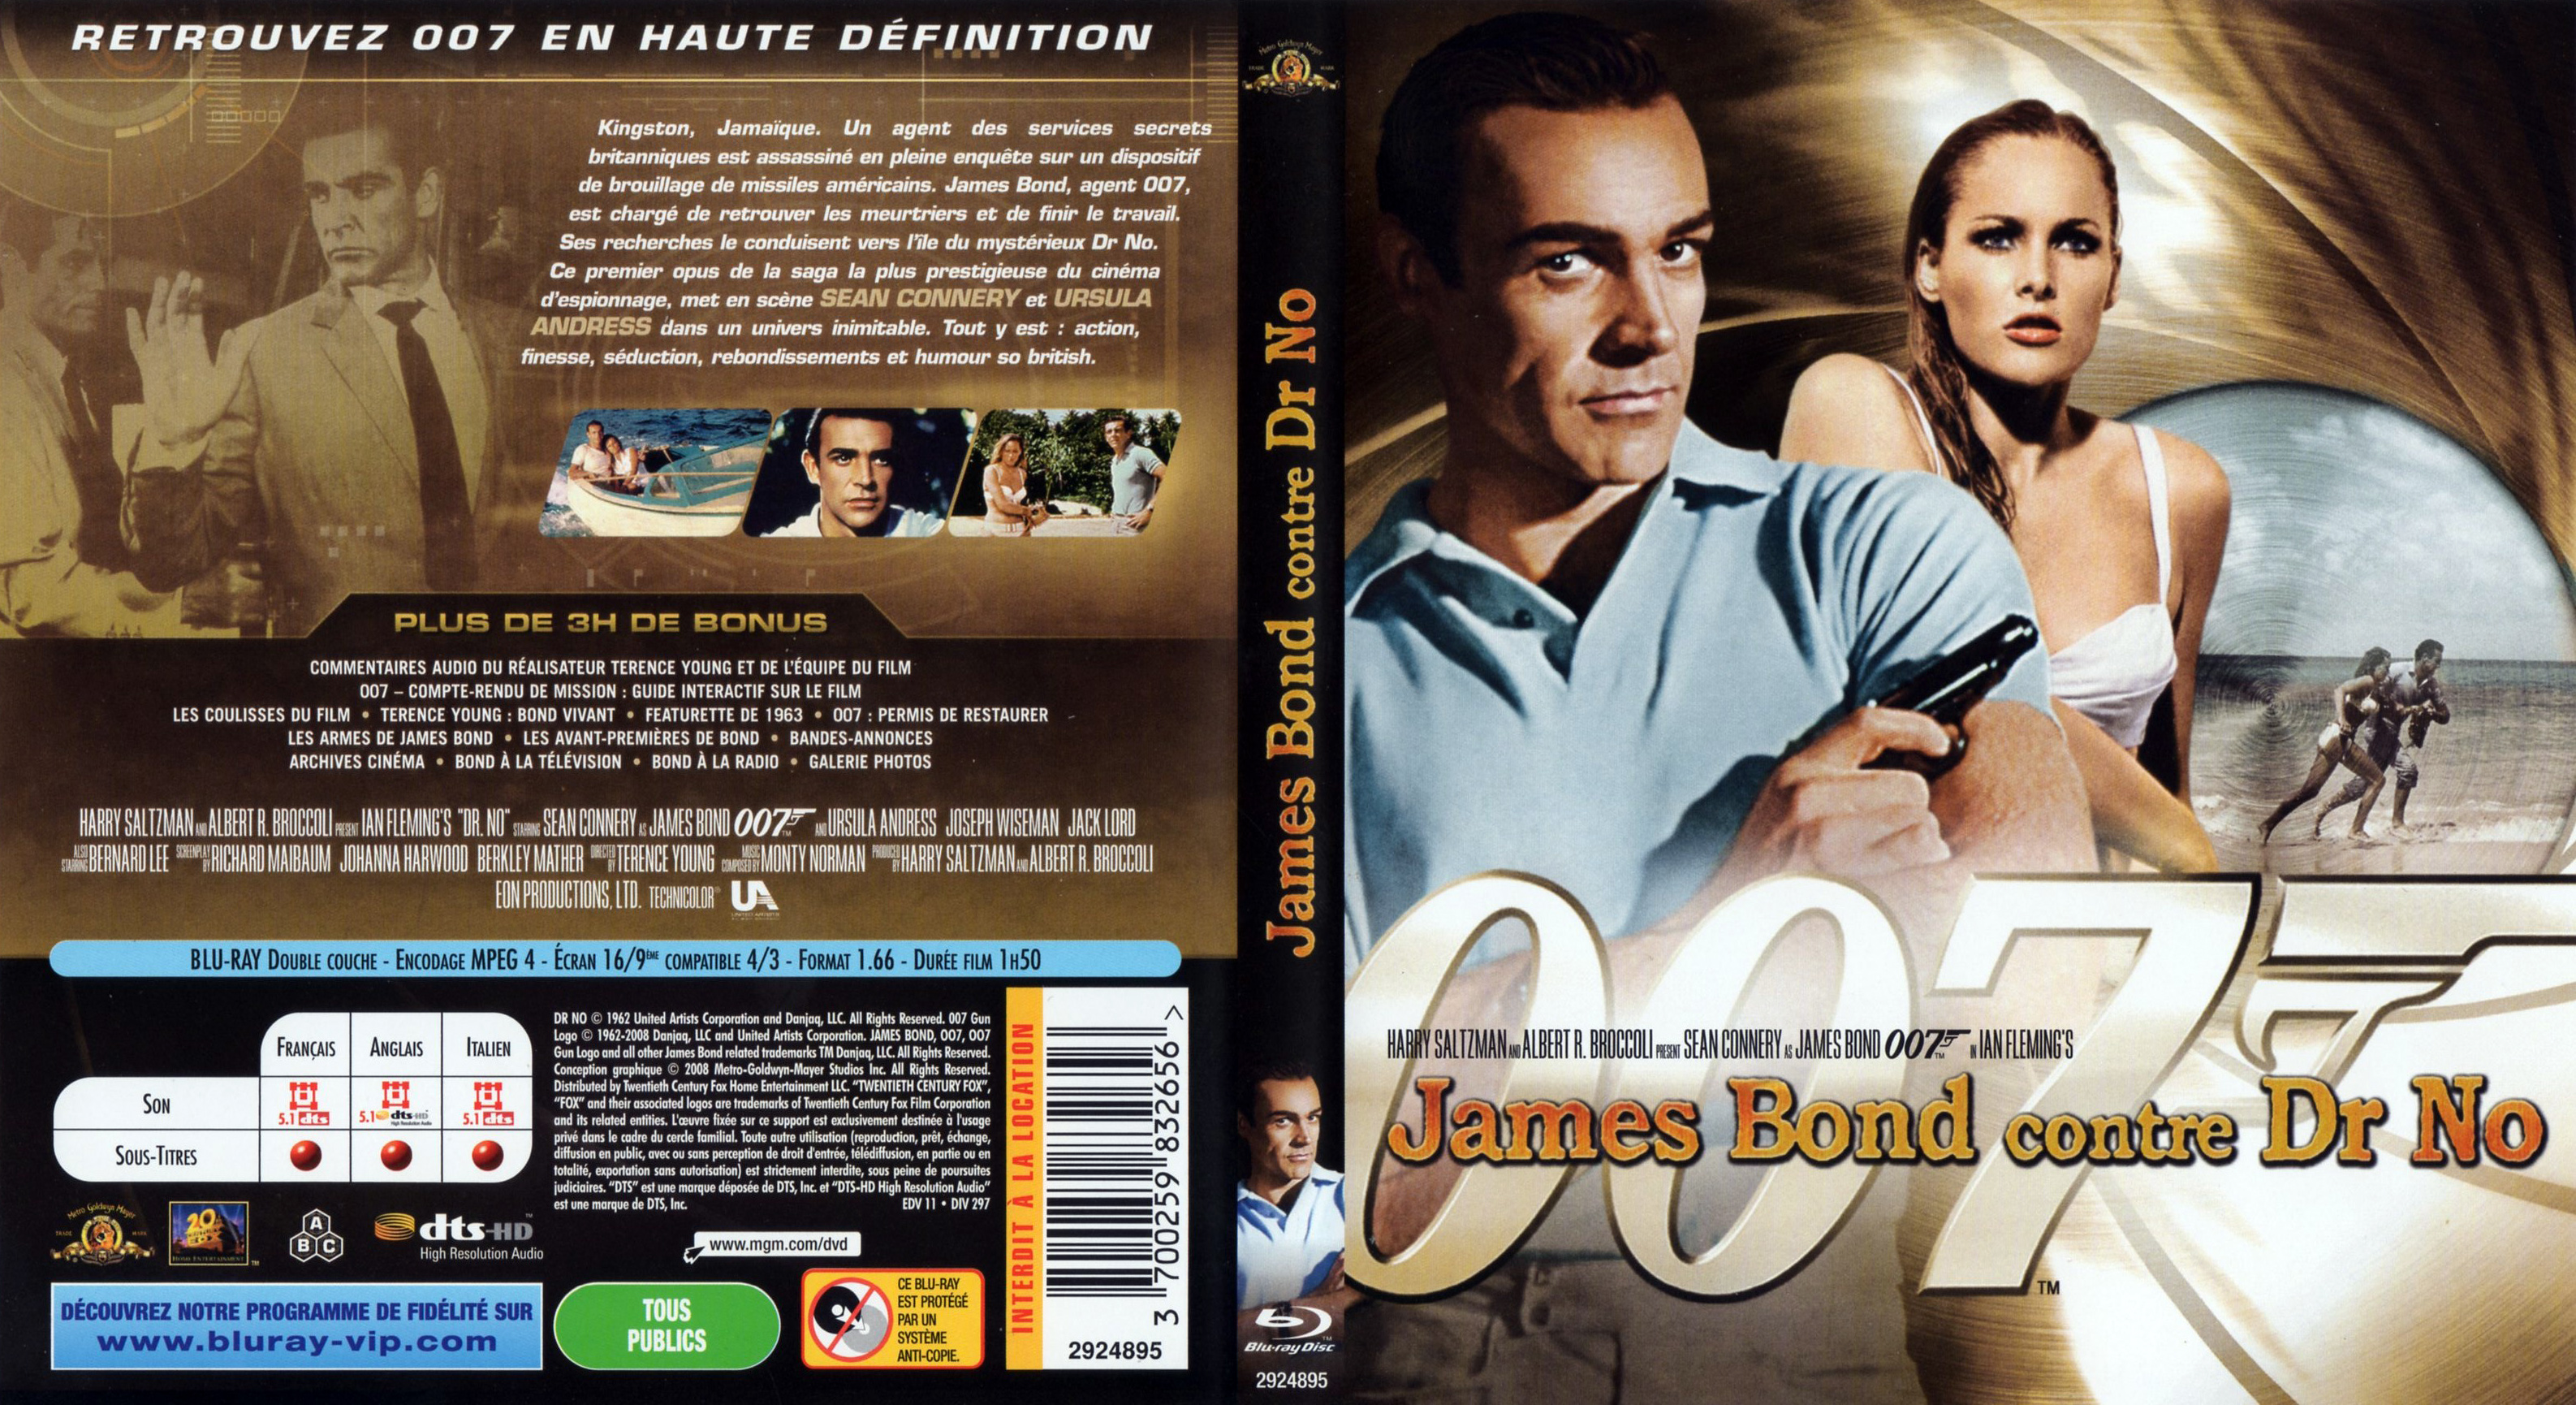 Jaquette DVD James Bond 007 James bond contre docteur No (BLU-RAY)